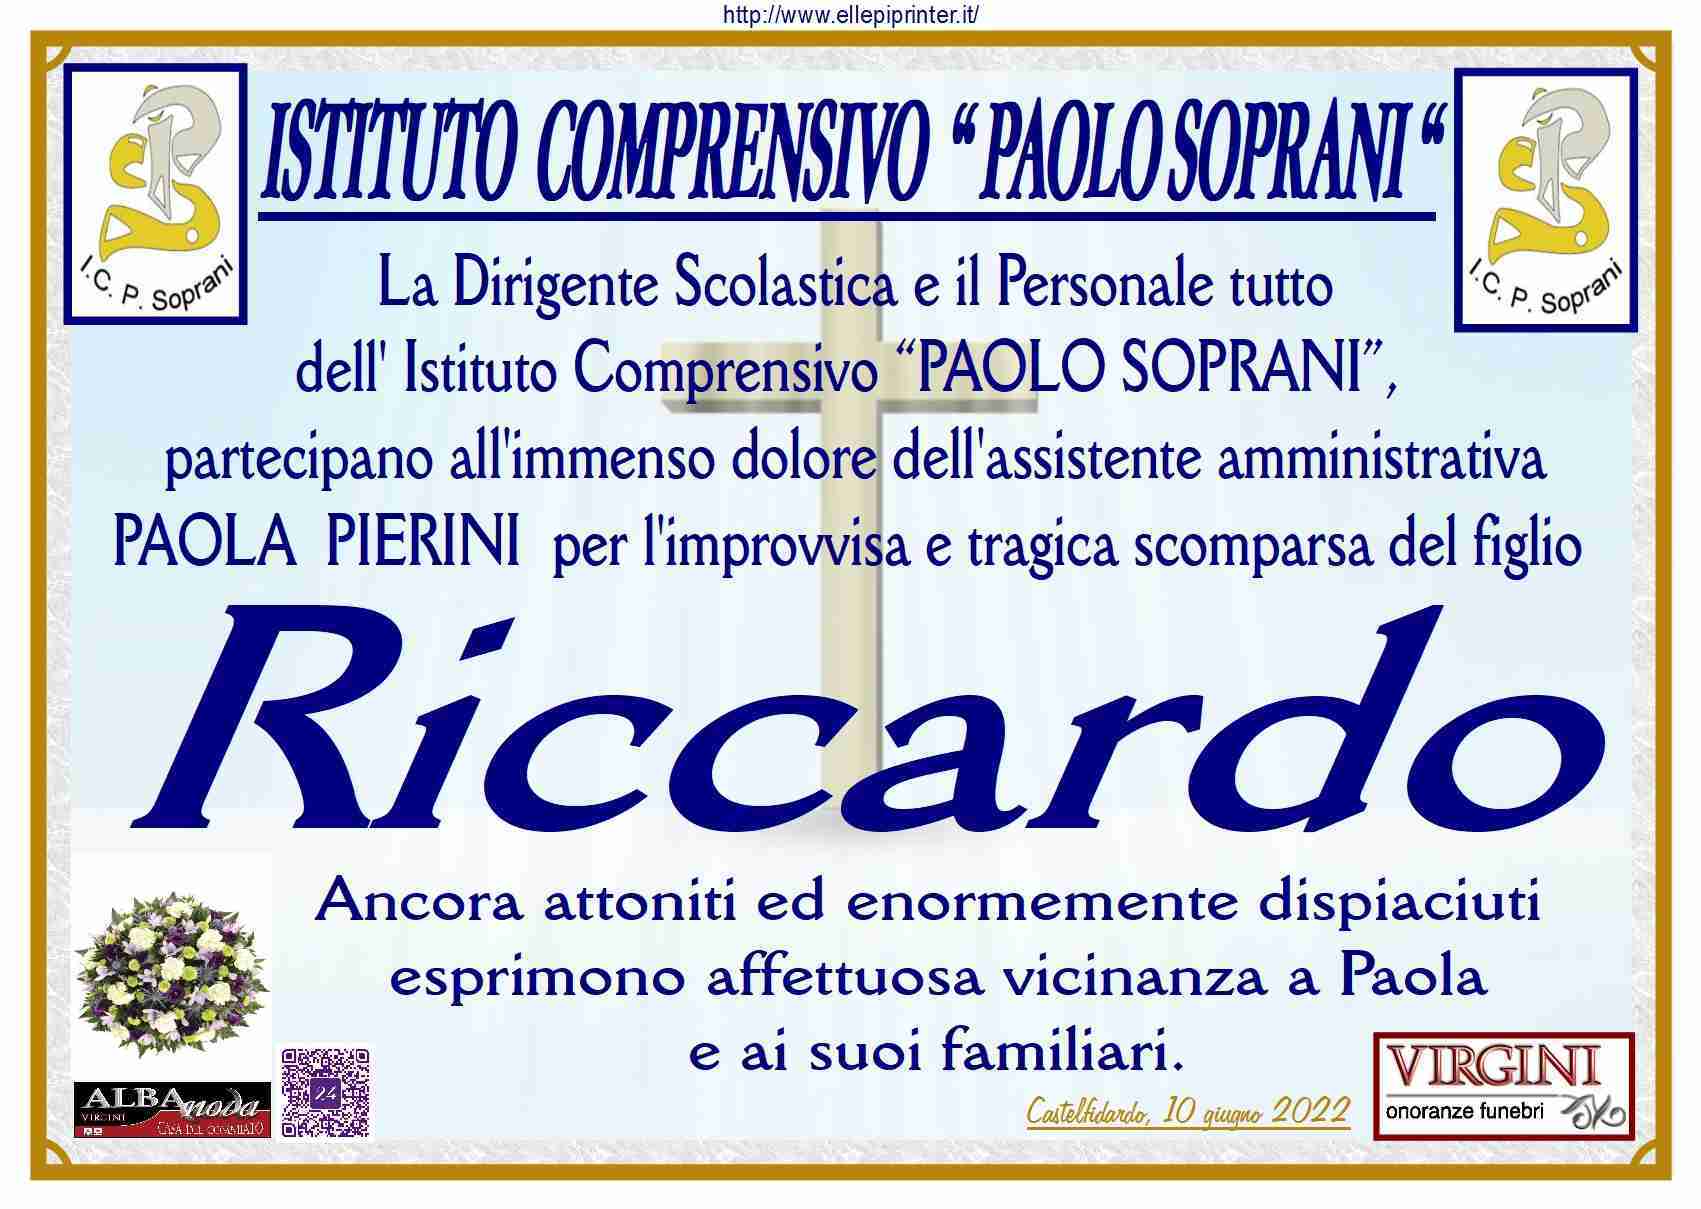 Riccardo Menghini